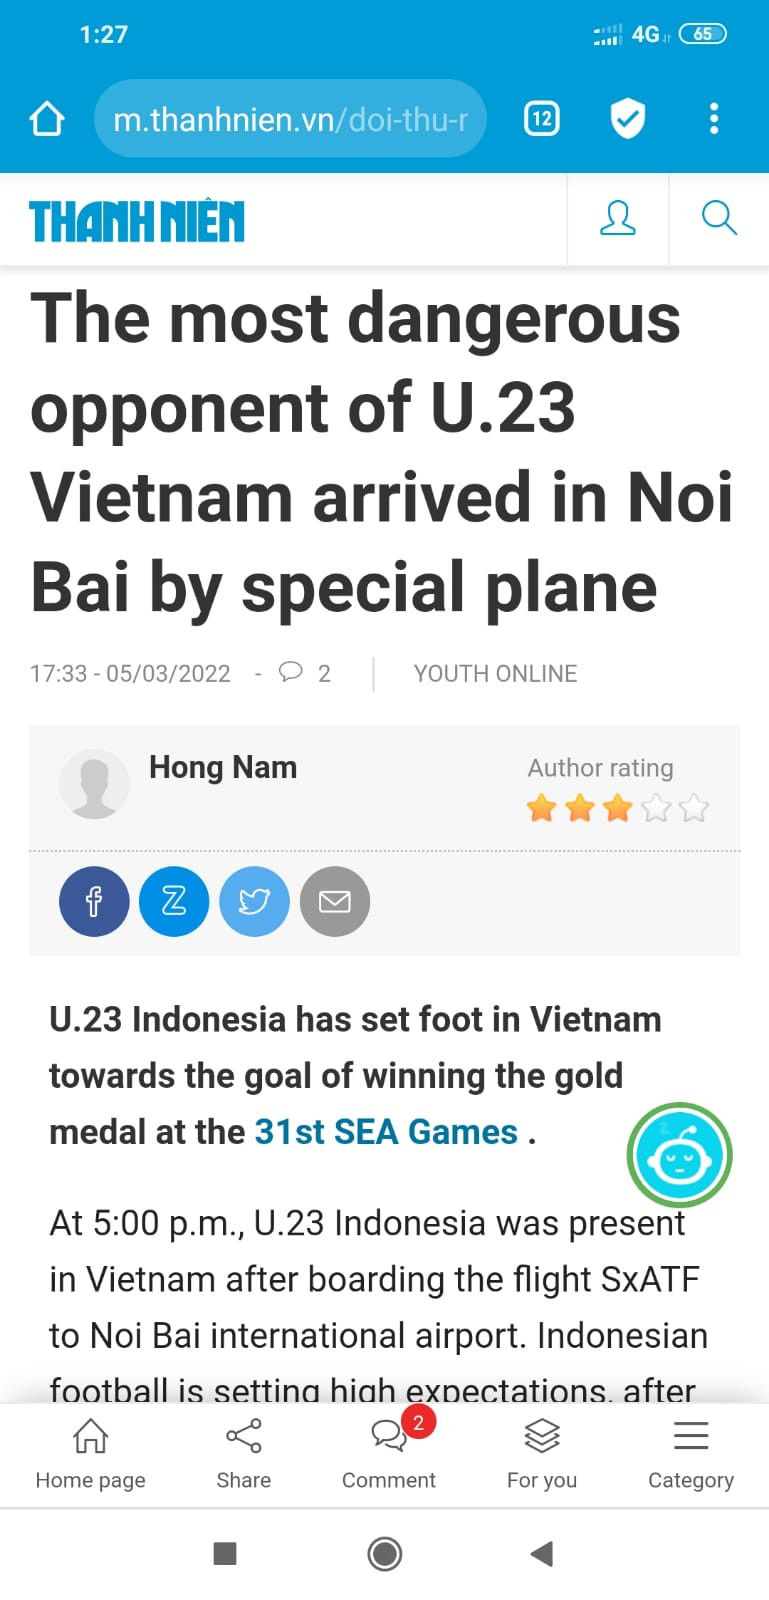 Media Vietnam Resah Timnas Indonesia U-23 Datang, Judulnya Bahaya